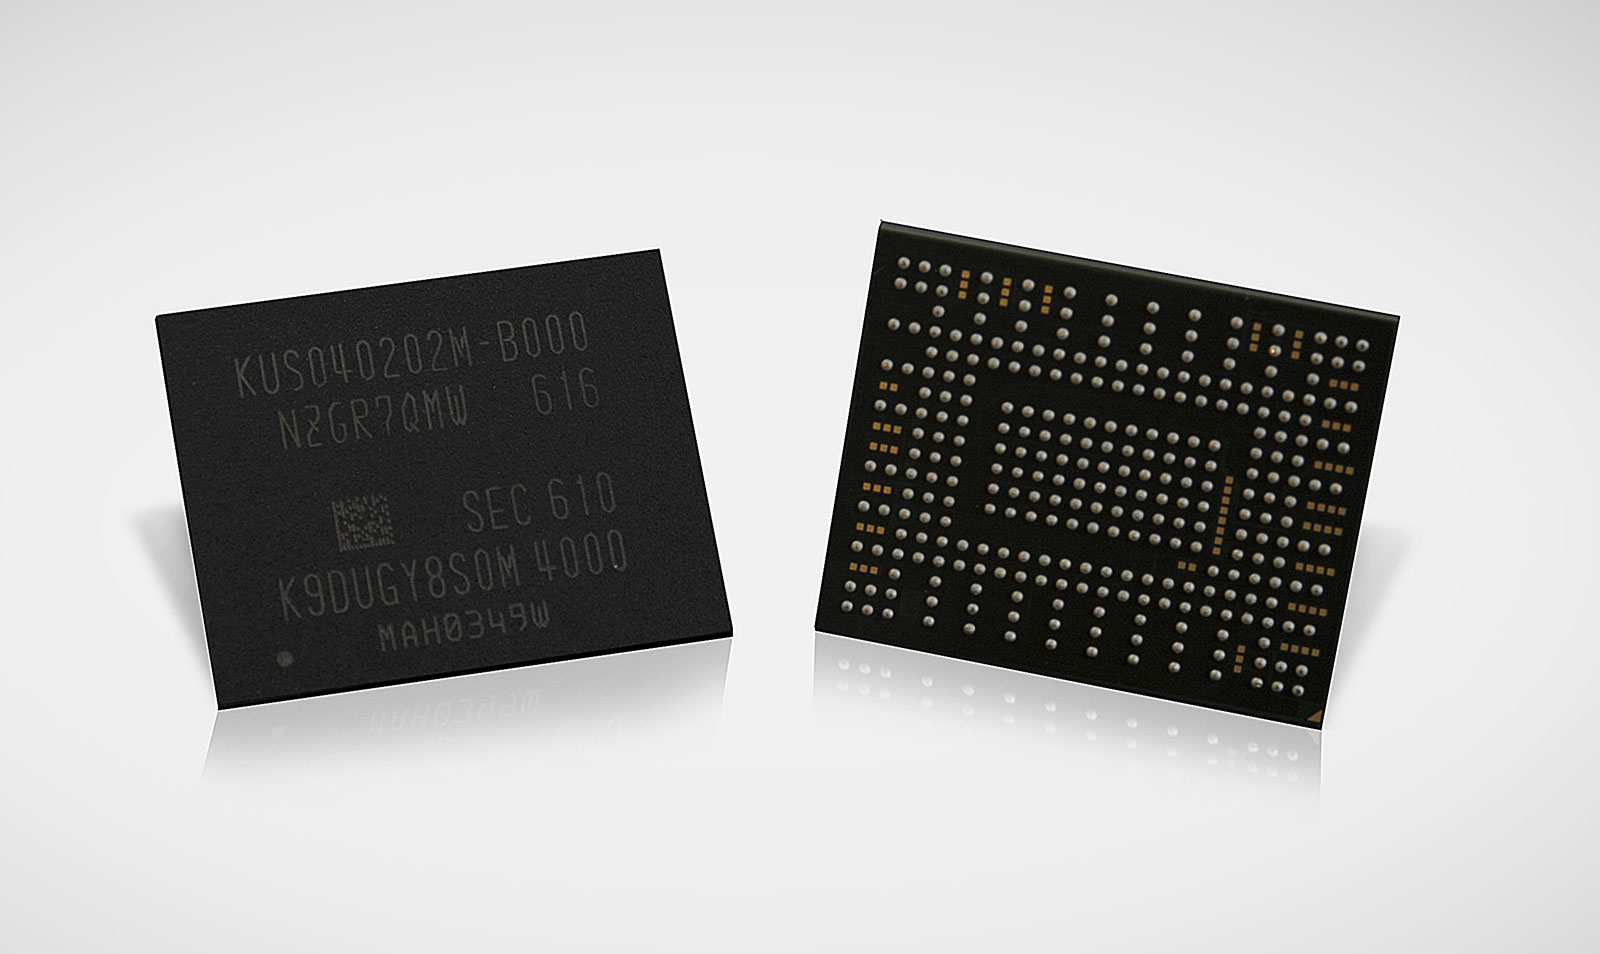 Новые SSD от Samsung емкостью в 512 ГБ по размеру не превышают почтовую марку - 1